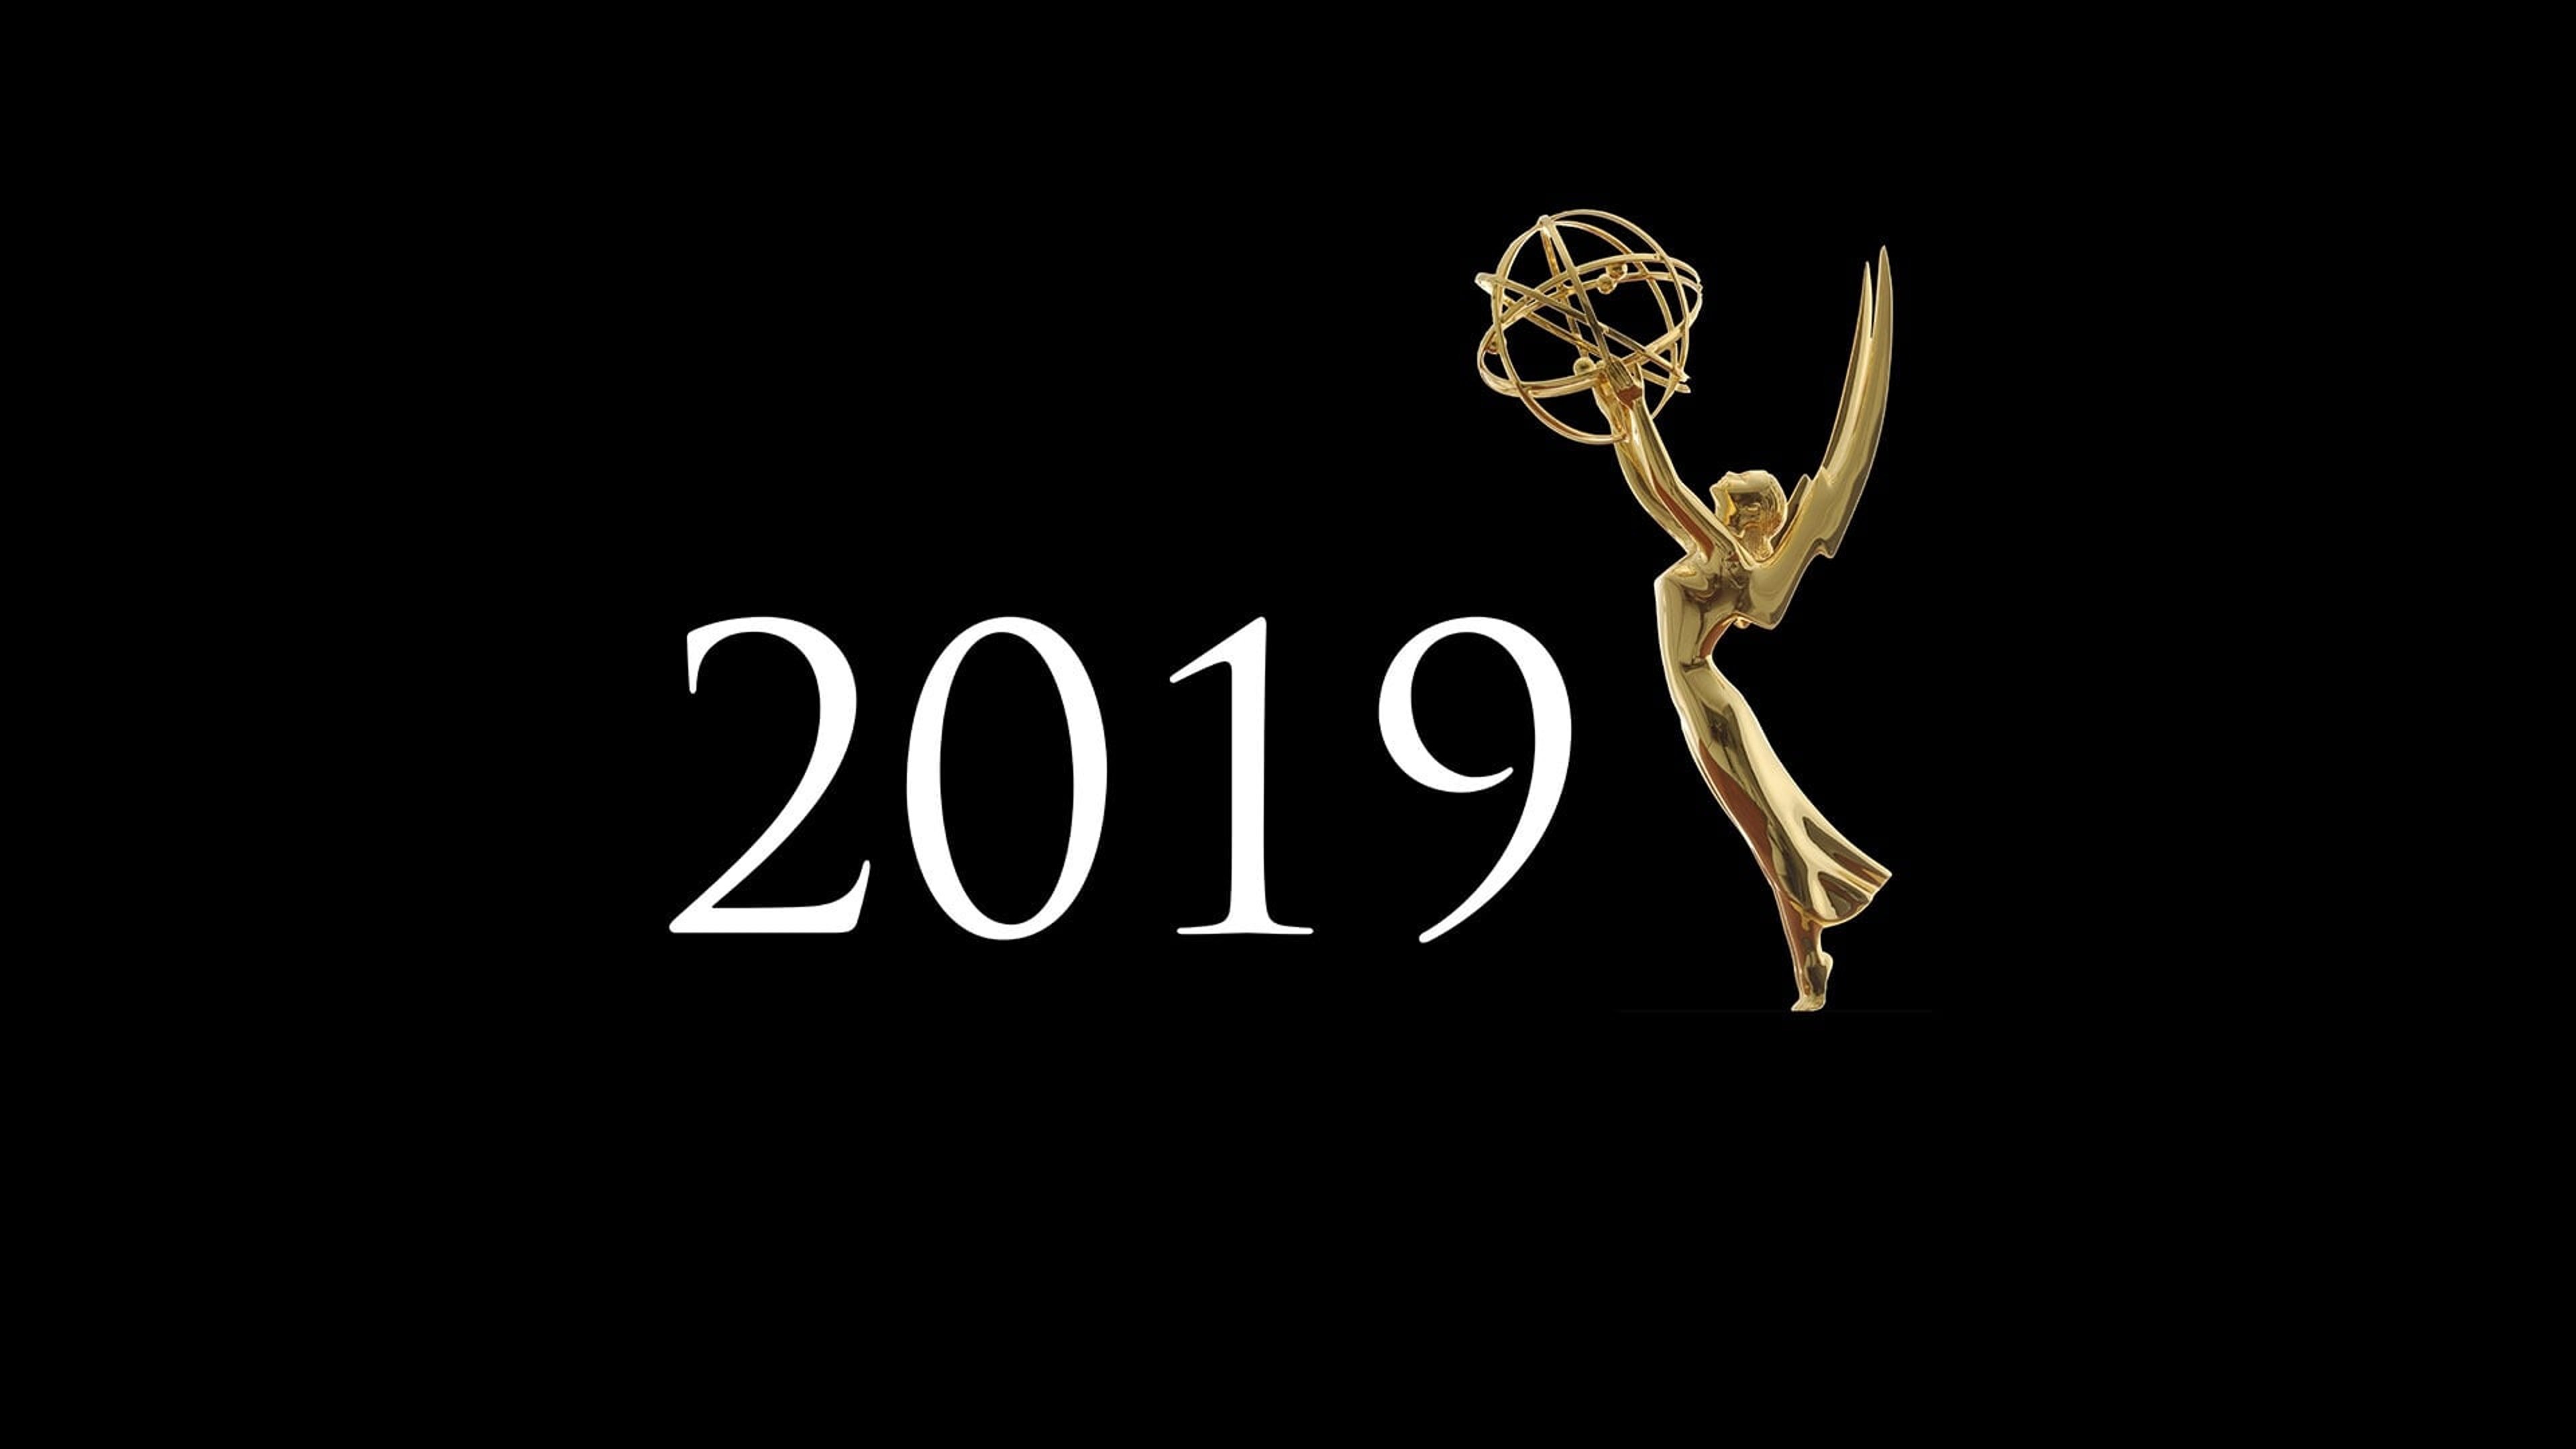 Dati e nomination dei Primetime Emmy Awards 2019 Cover